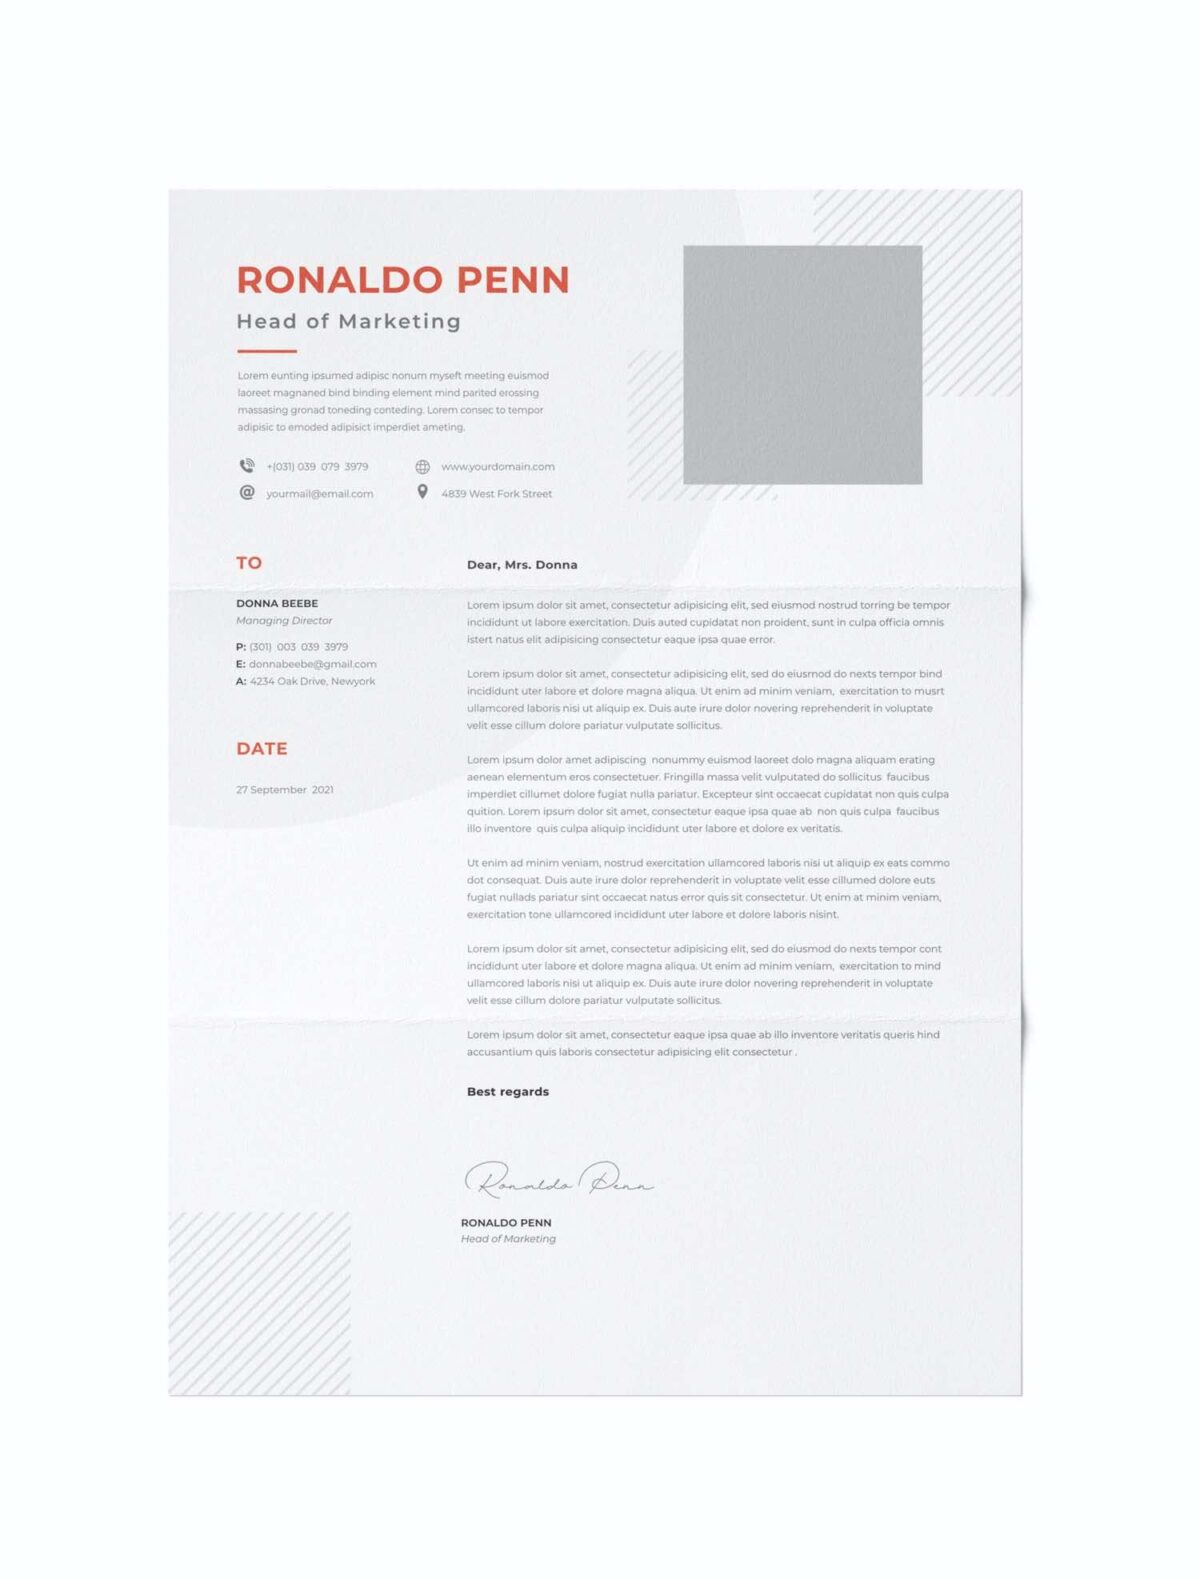 CV #29 Ronaldo Penn